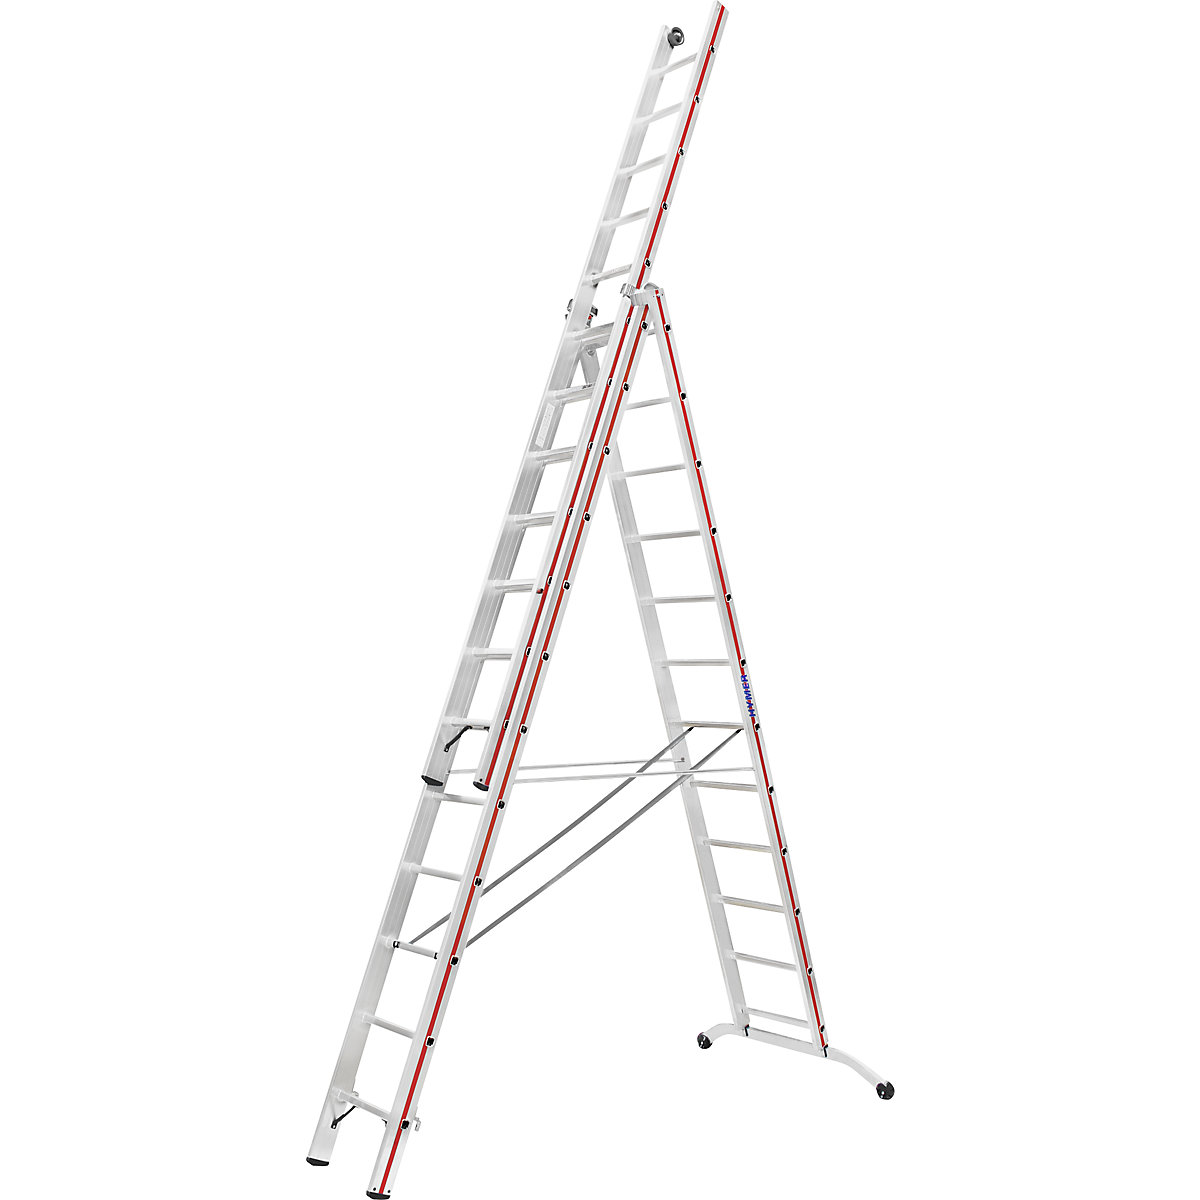 Aluminijasta večnamenska lestev – HYMER, industrijska izvedba z nadglavnimi kolesci, 3 x 12 klinov, maks. delovna višina 9,34 m